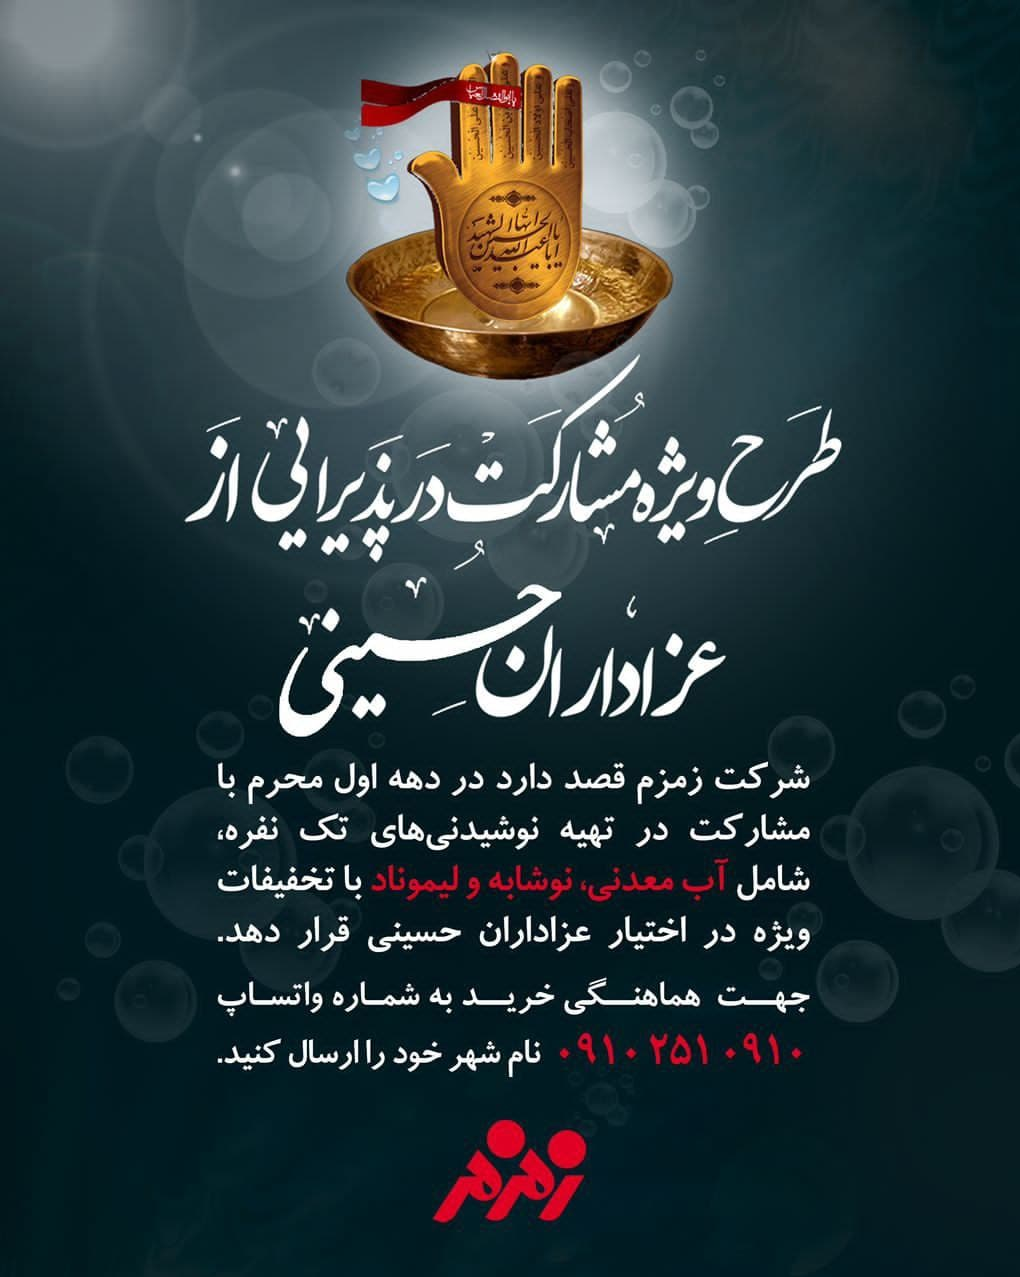 طرح ویژه زمزم برای مشارکت در پذیرایی از عزاداران حسینی